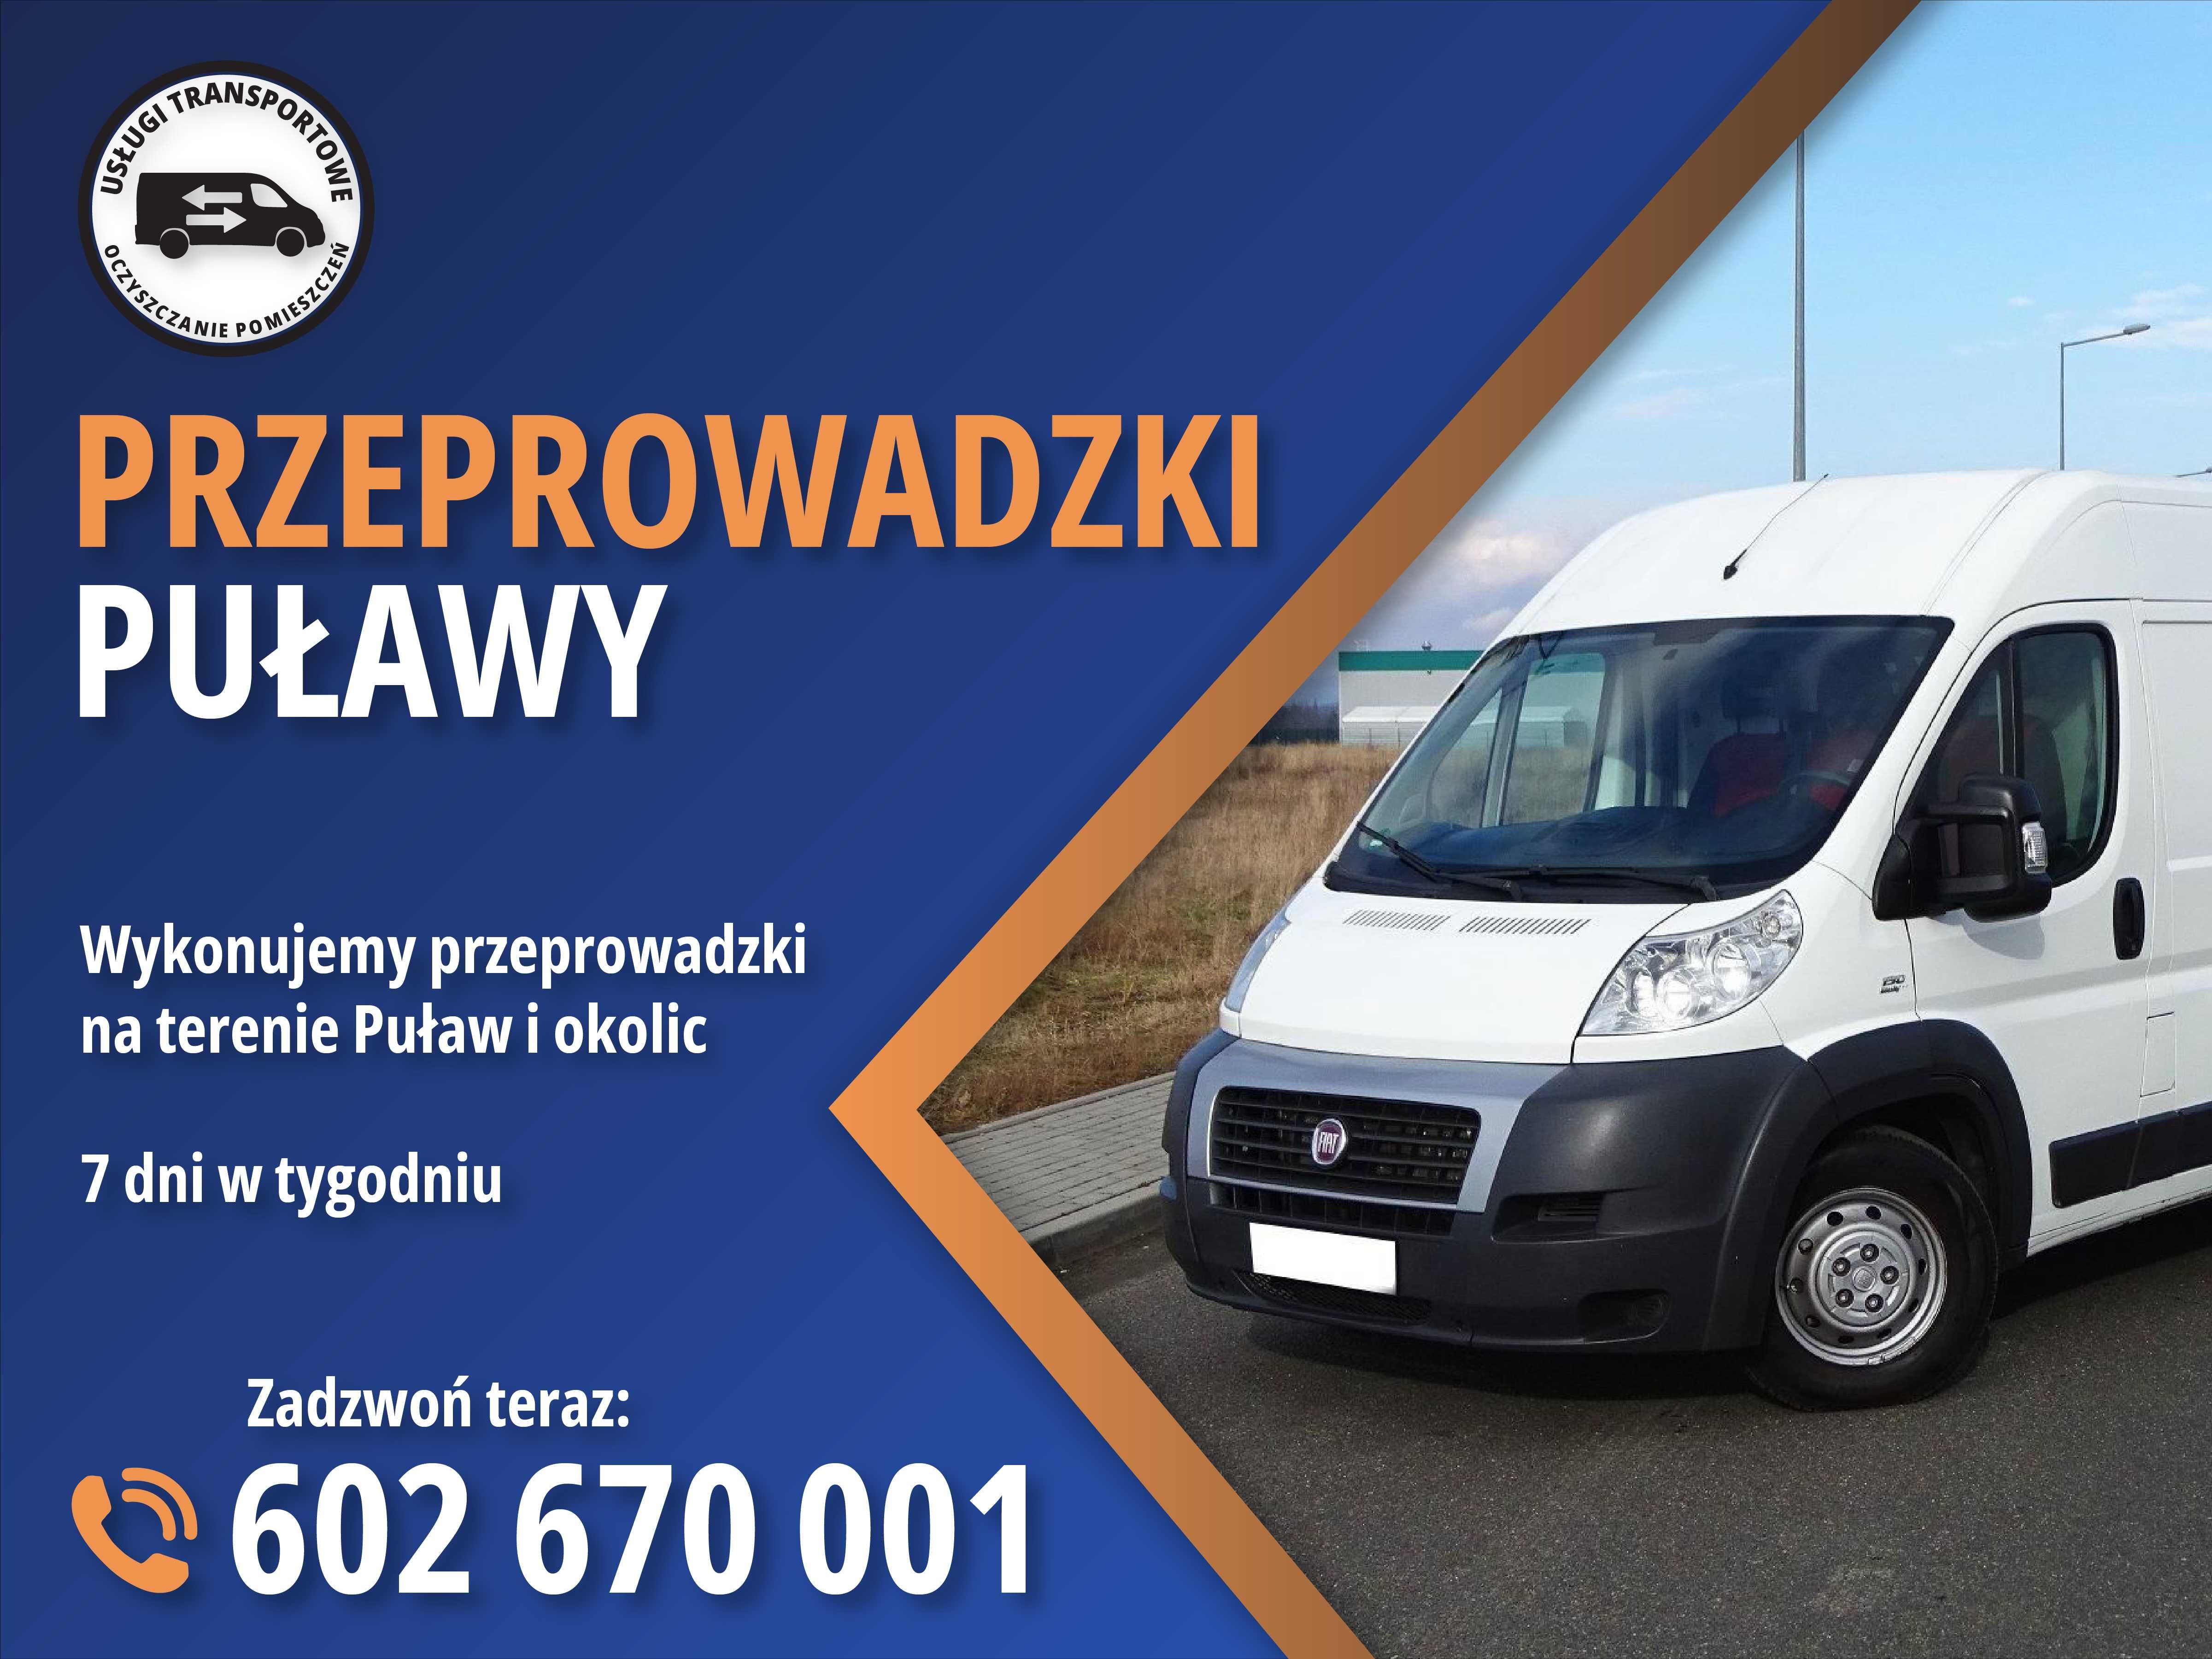 Przeprowadzki Puławy - Usługi transportowe - Przewóz rzeczy